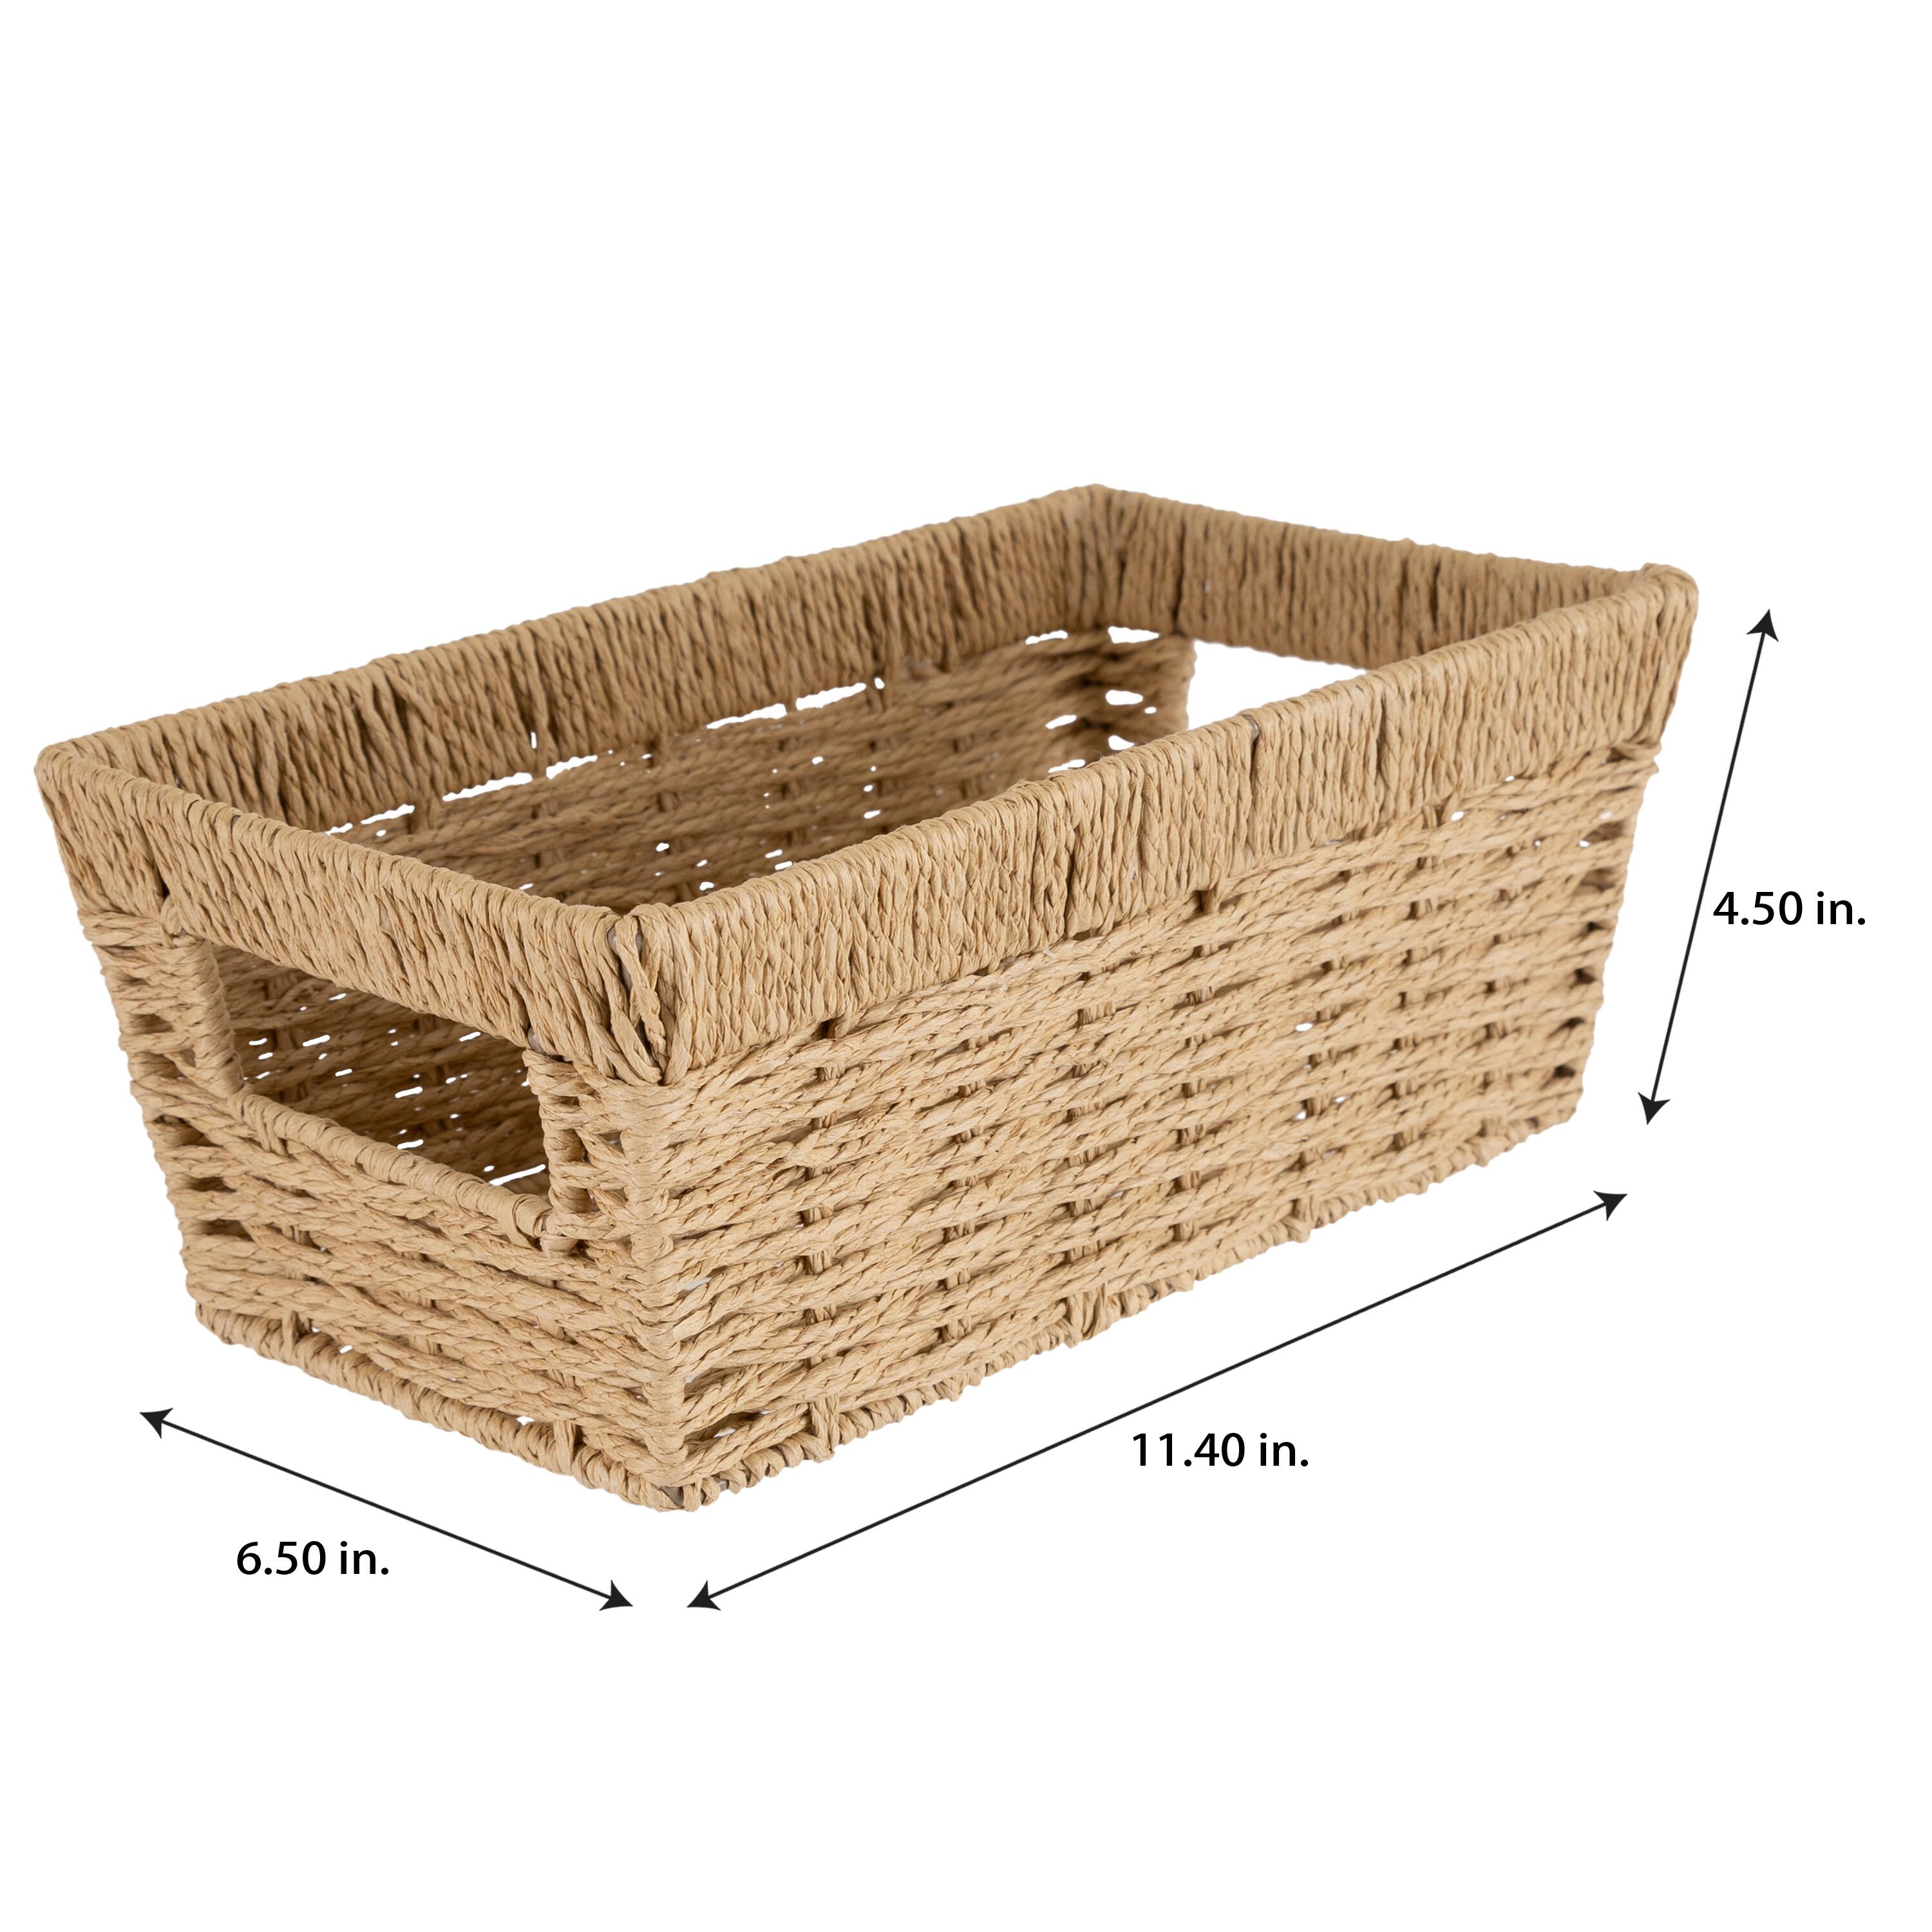 Simplify Small Dutch Weave Shelf Storage Basket